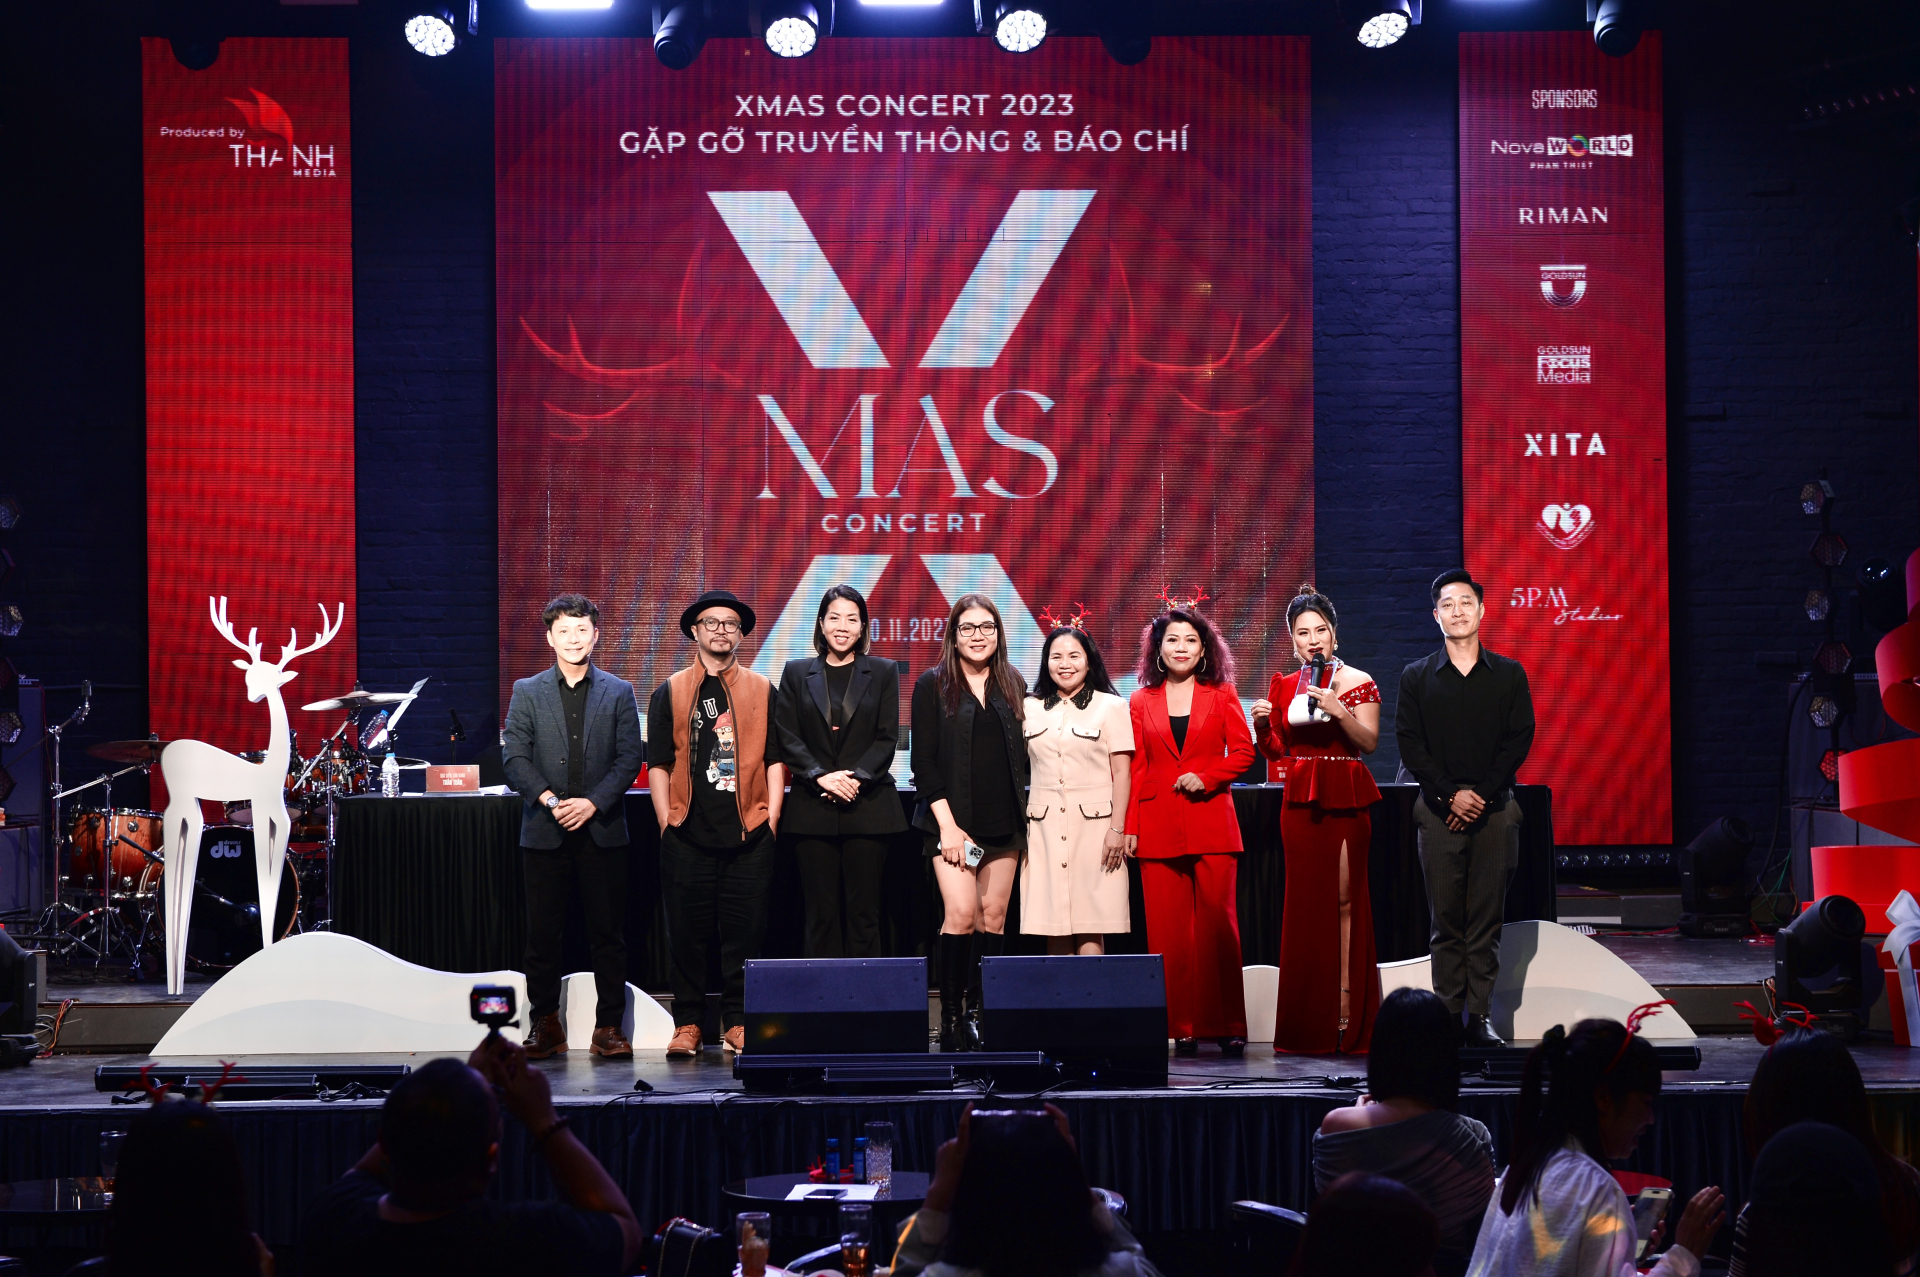 Hồ Ngọc Hà, Vũ Cát Tường góp mặt trong đêm nhạc gây quỹ Xmas Concert 2023 - ảnh 4